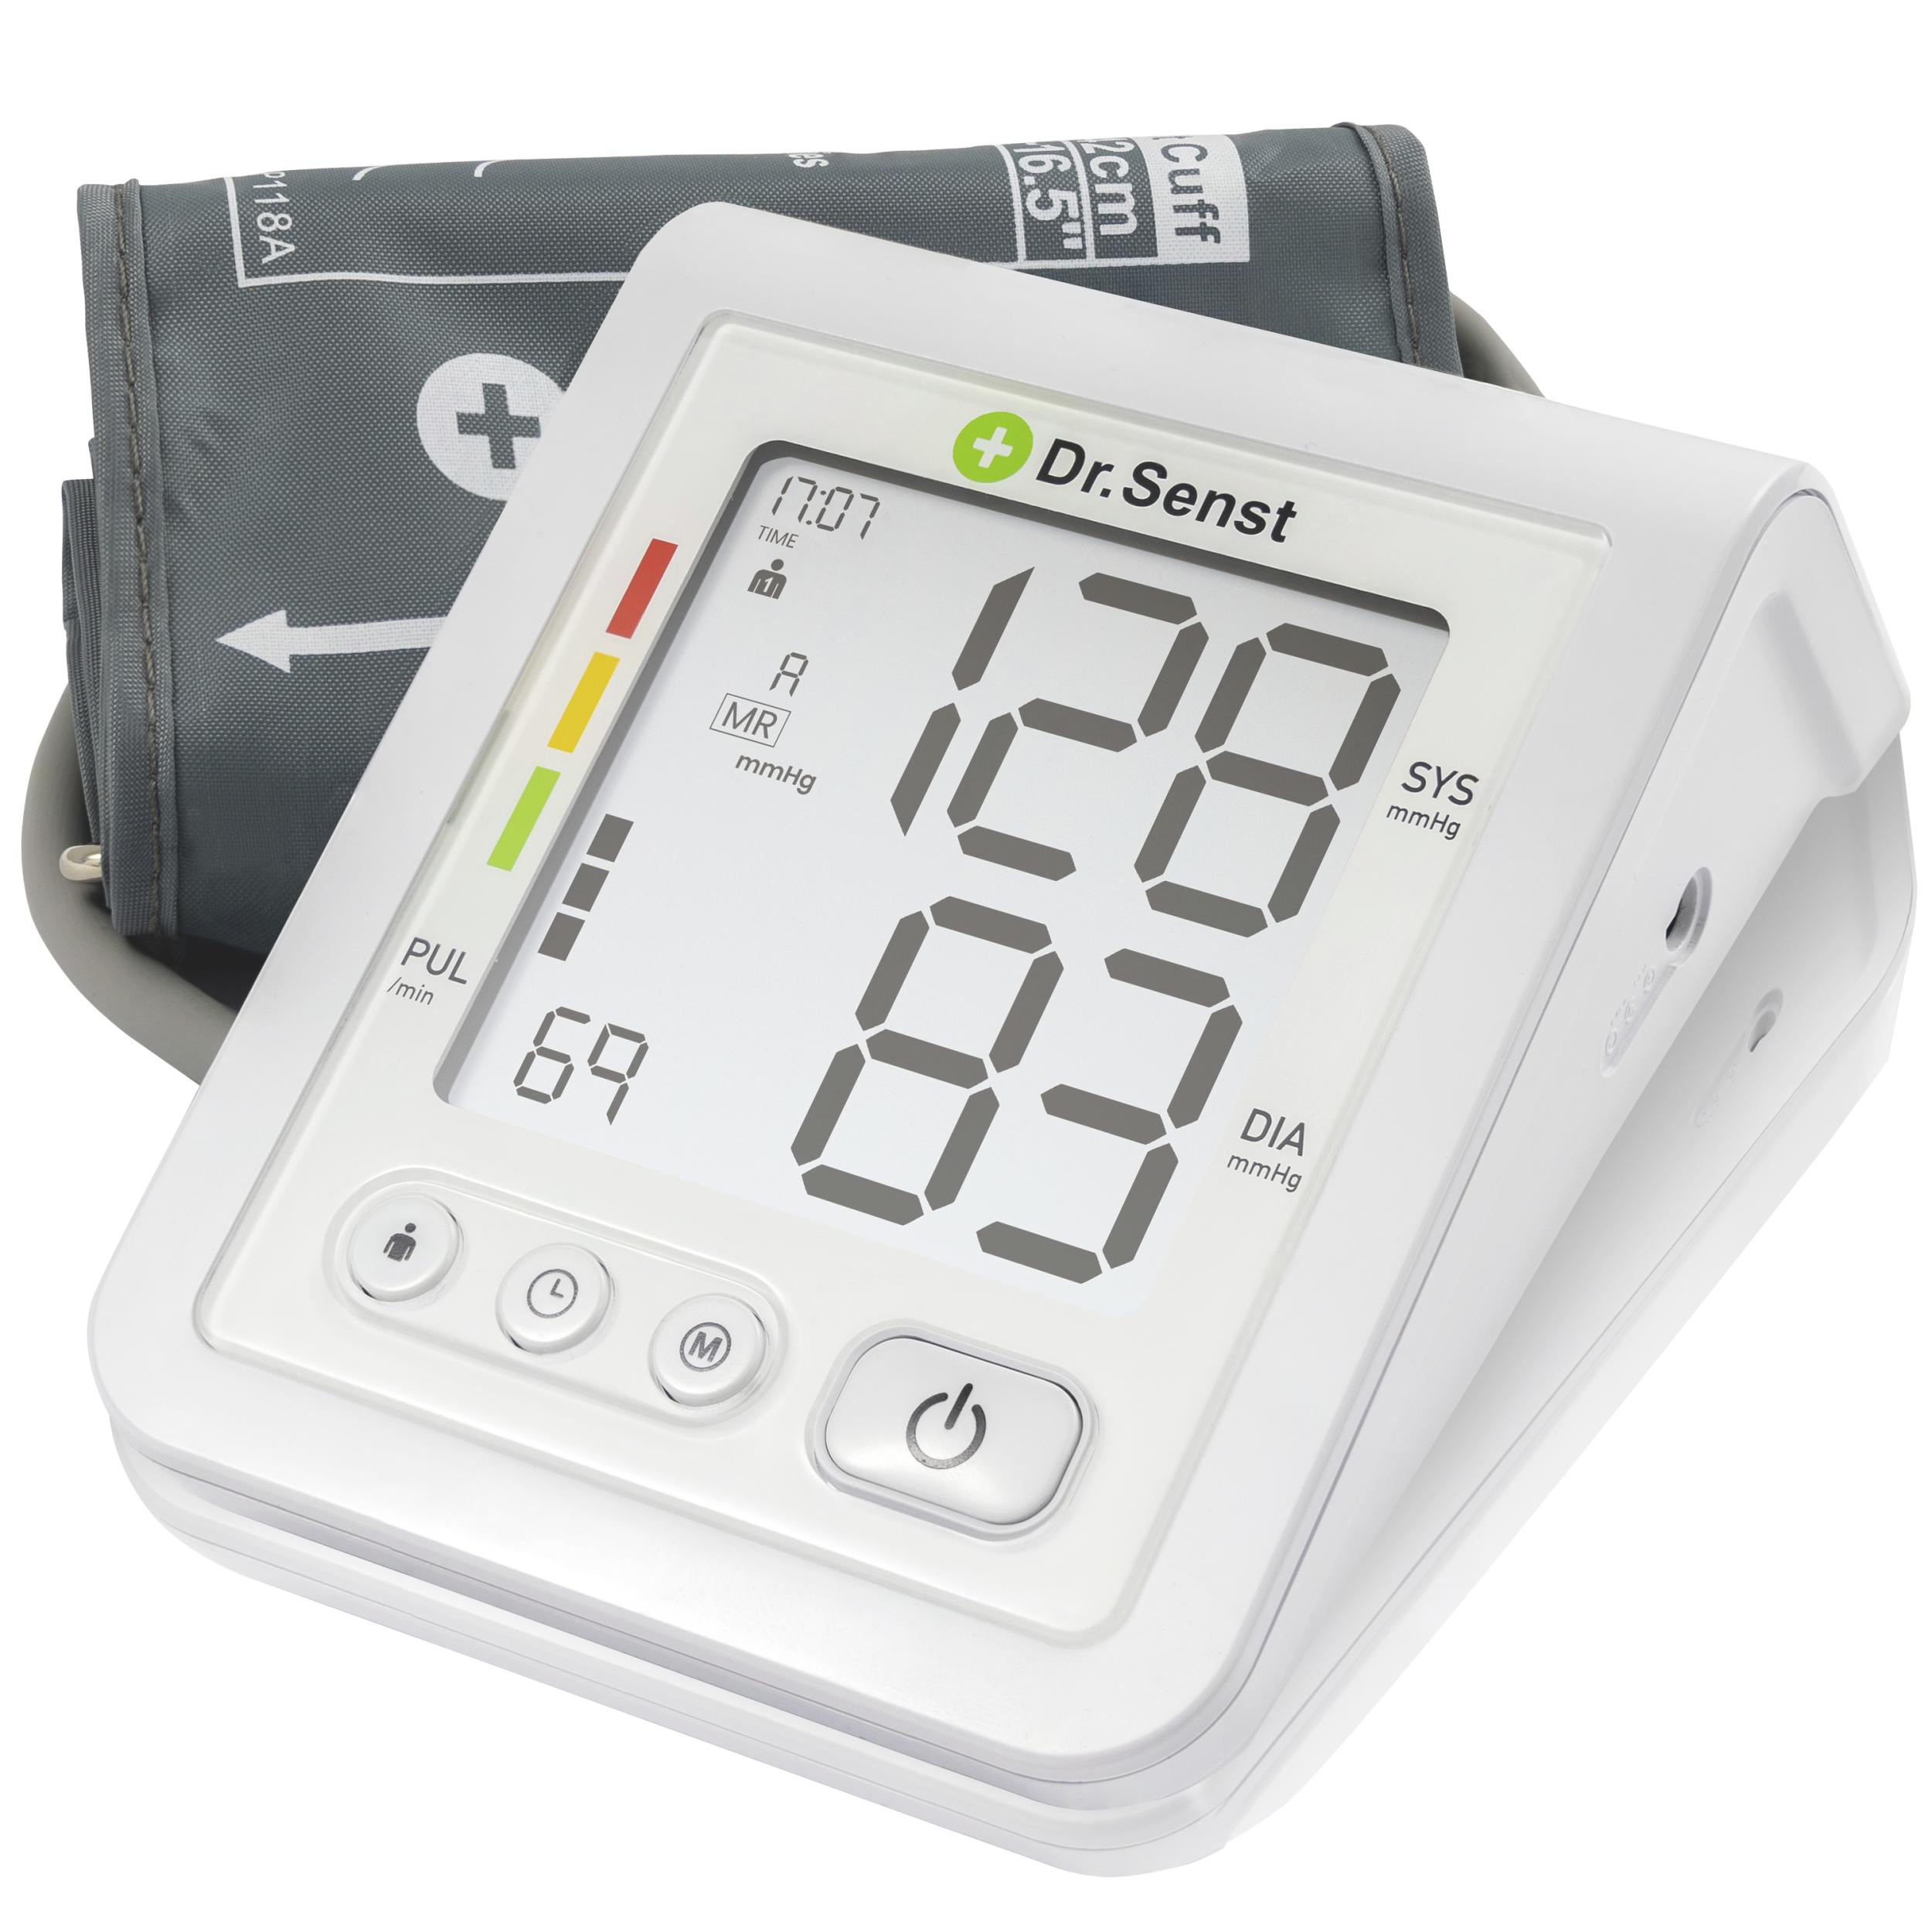 Dr. Senst Oberarm-Blutdruckmessgerät, mit Pulsmessung und Arrhythmieerkennung